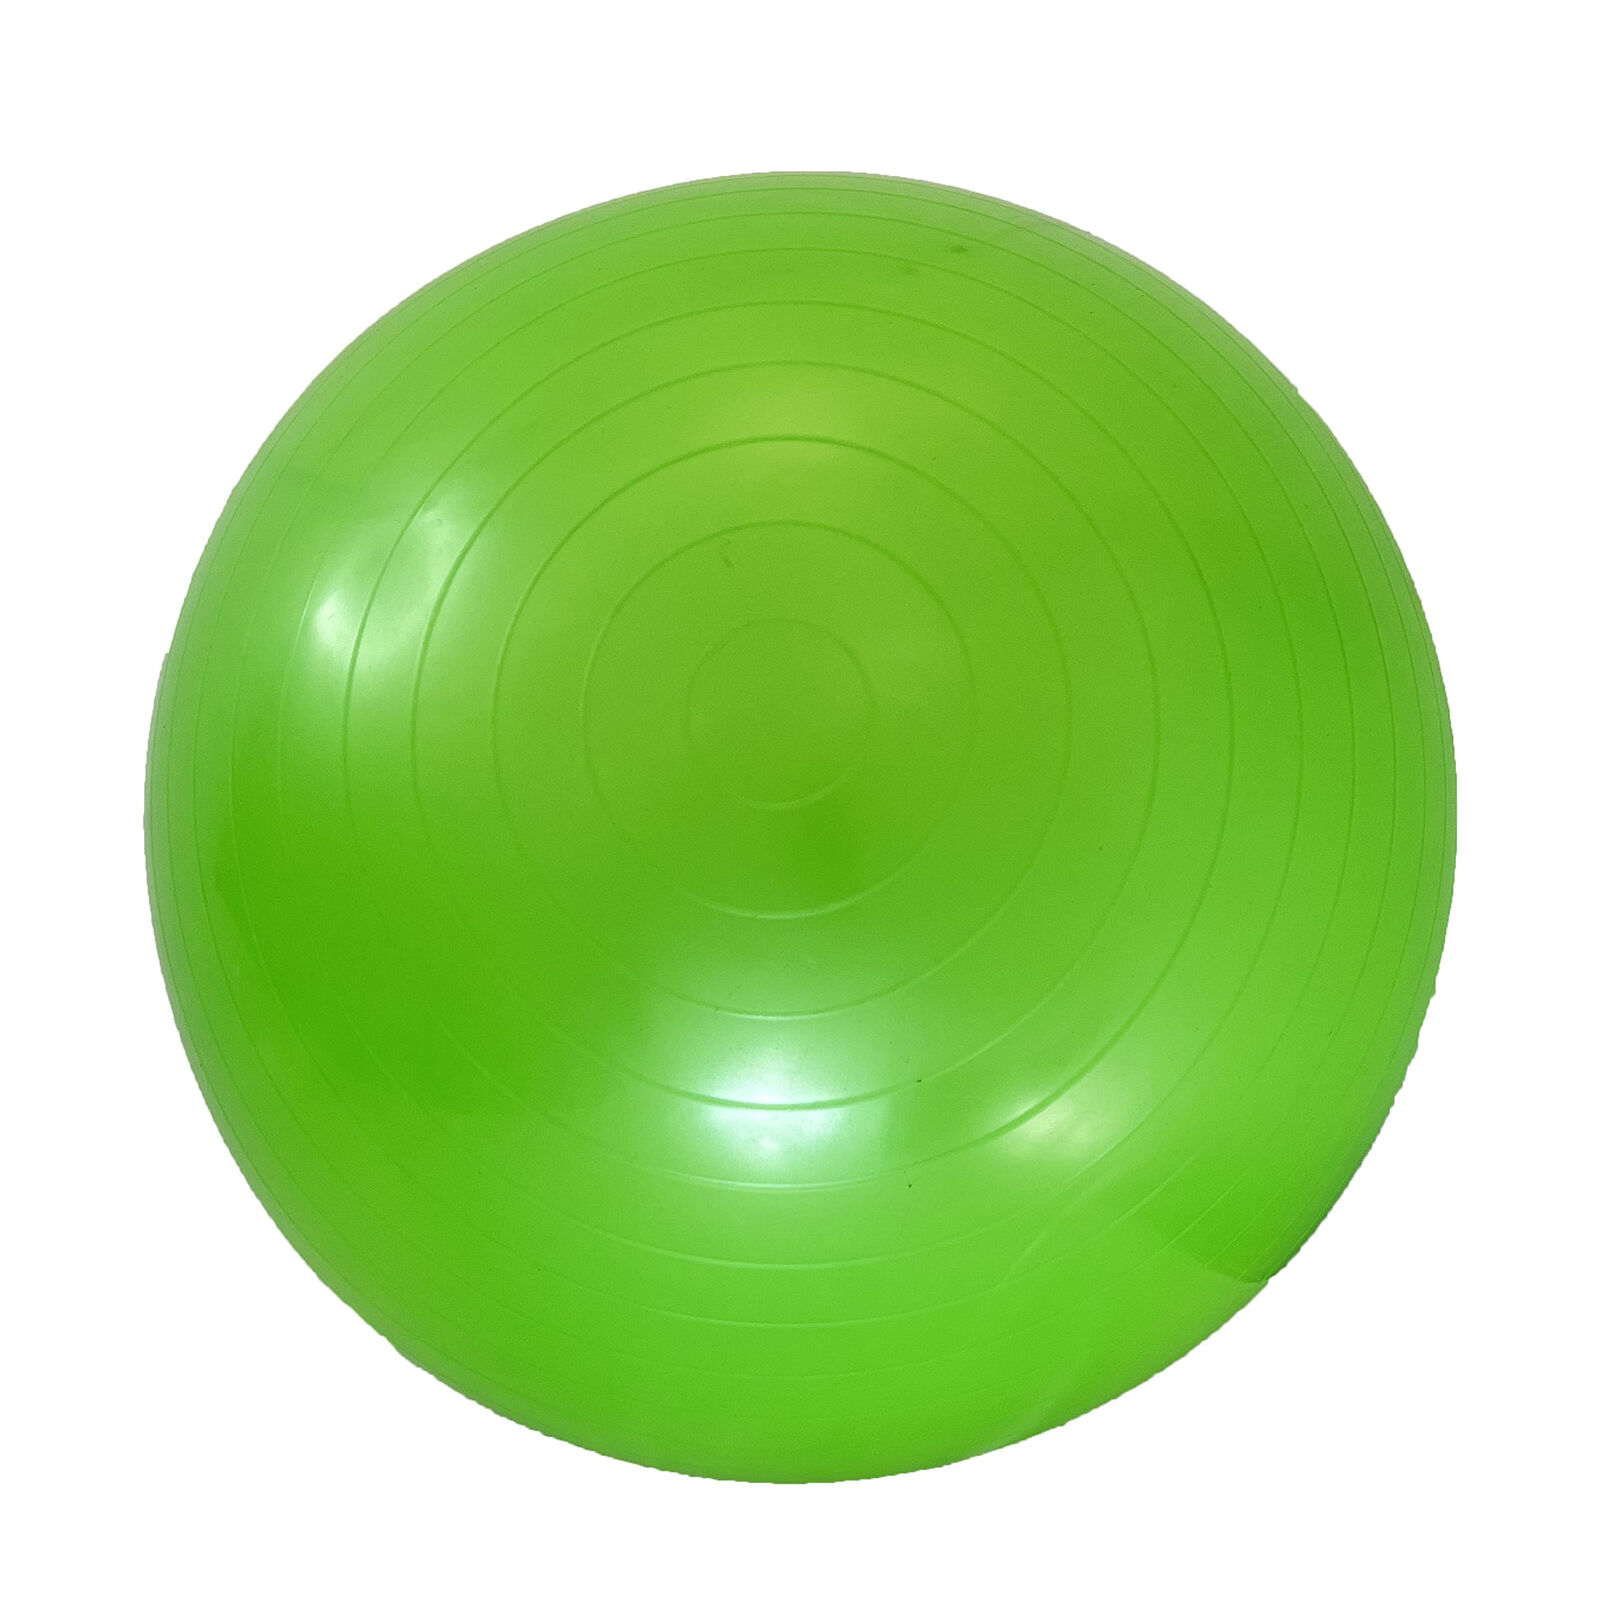 Фитбол с насосом UNIX Fit антивзрыв, 75 см, зеленый UNIX Fit™ Фитболы